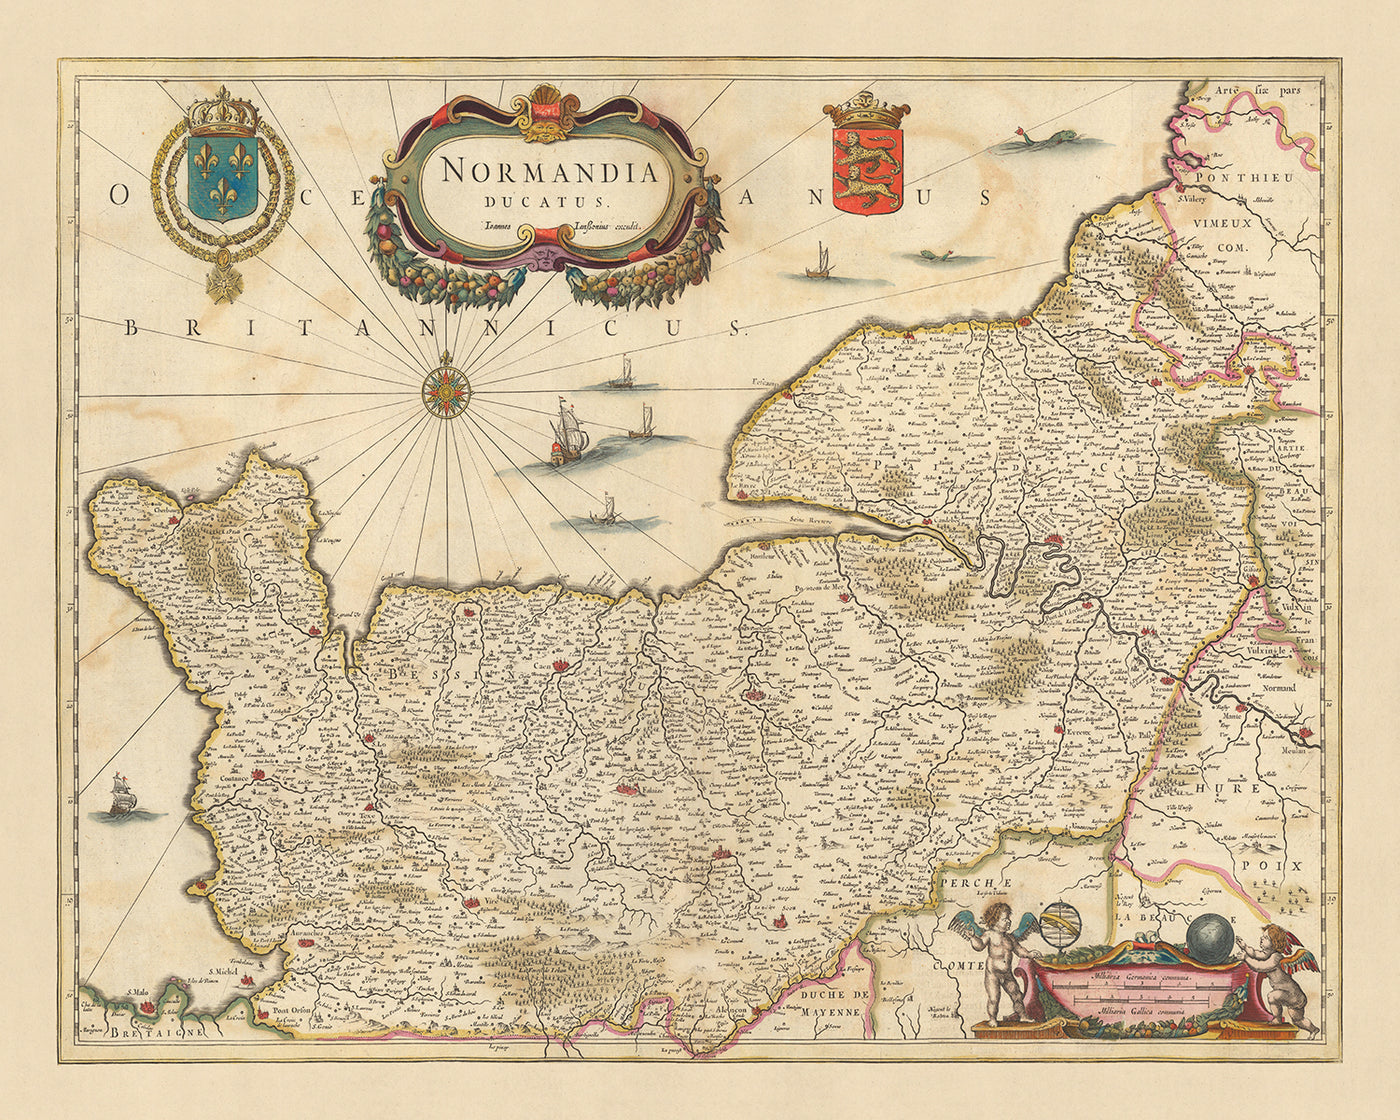 Alte Karte des Herzogtums Normandie von Visscher, 1690: Caen, Le Havre, Roen, Cherbourg-en-Cotentin, Normandie-Maine Park